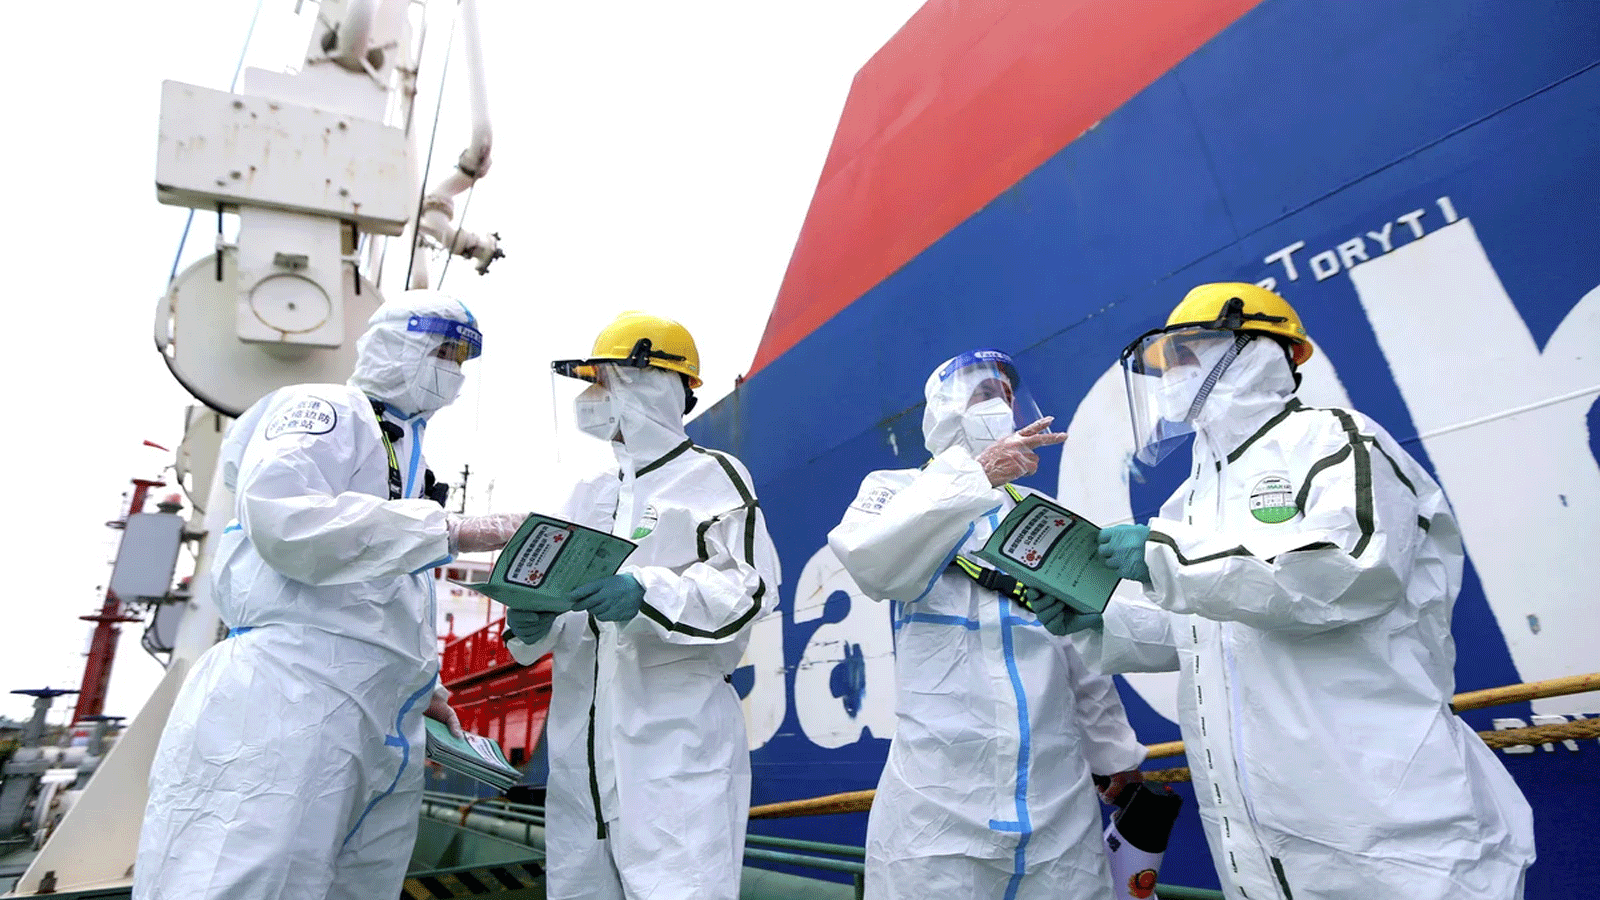  يرتدي ضباط الشرطة (اليسار والثاني من اليمين) ملابس واقية أثناء شرحهم كيفية مكافحة انتشار Covid-19 للعاملين في ميناء نانجينغ بمقاطعة جيانغسو شرق الصين في 4 آب\ أغسطس 2021.